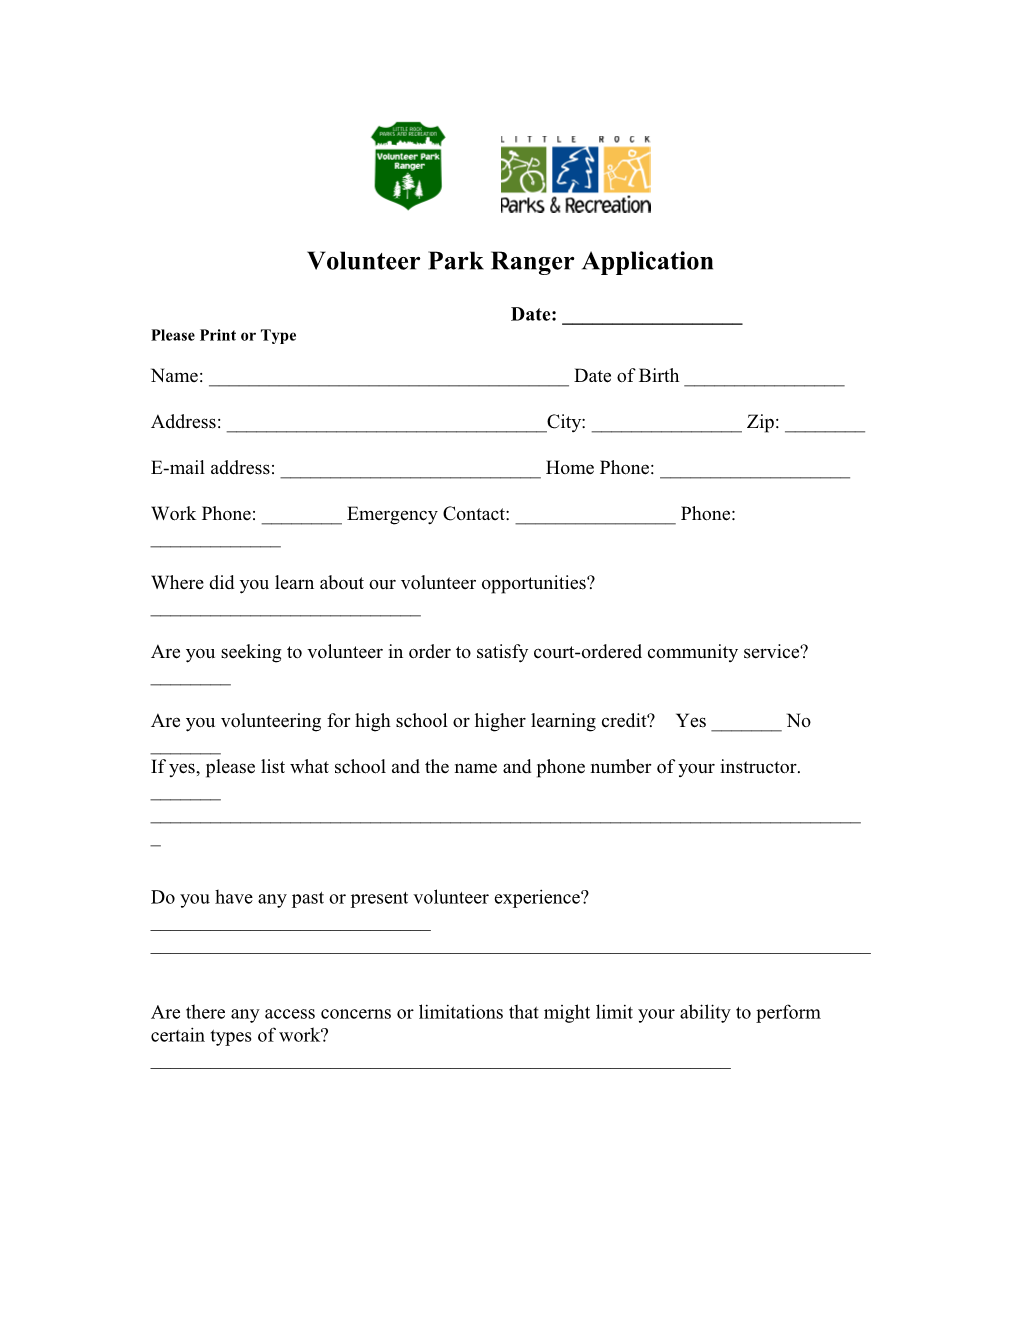 Volunteer Park Ranger Application